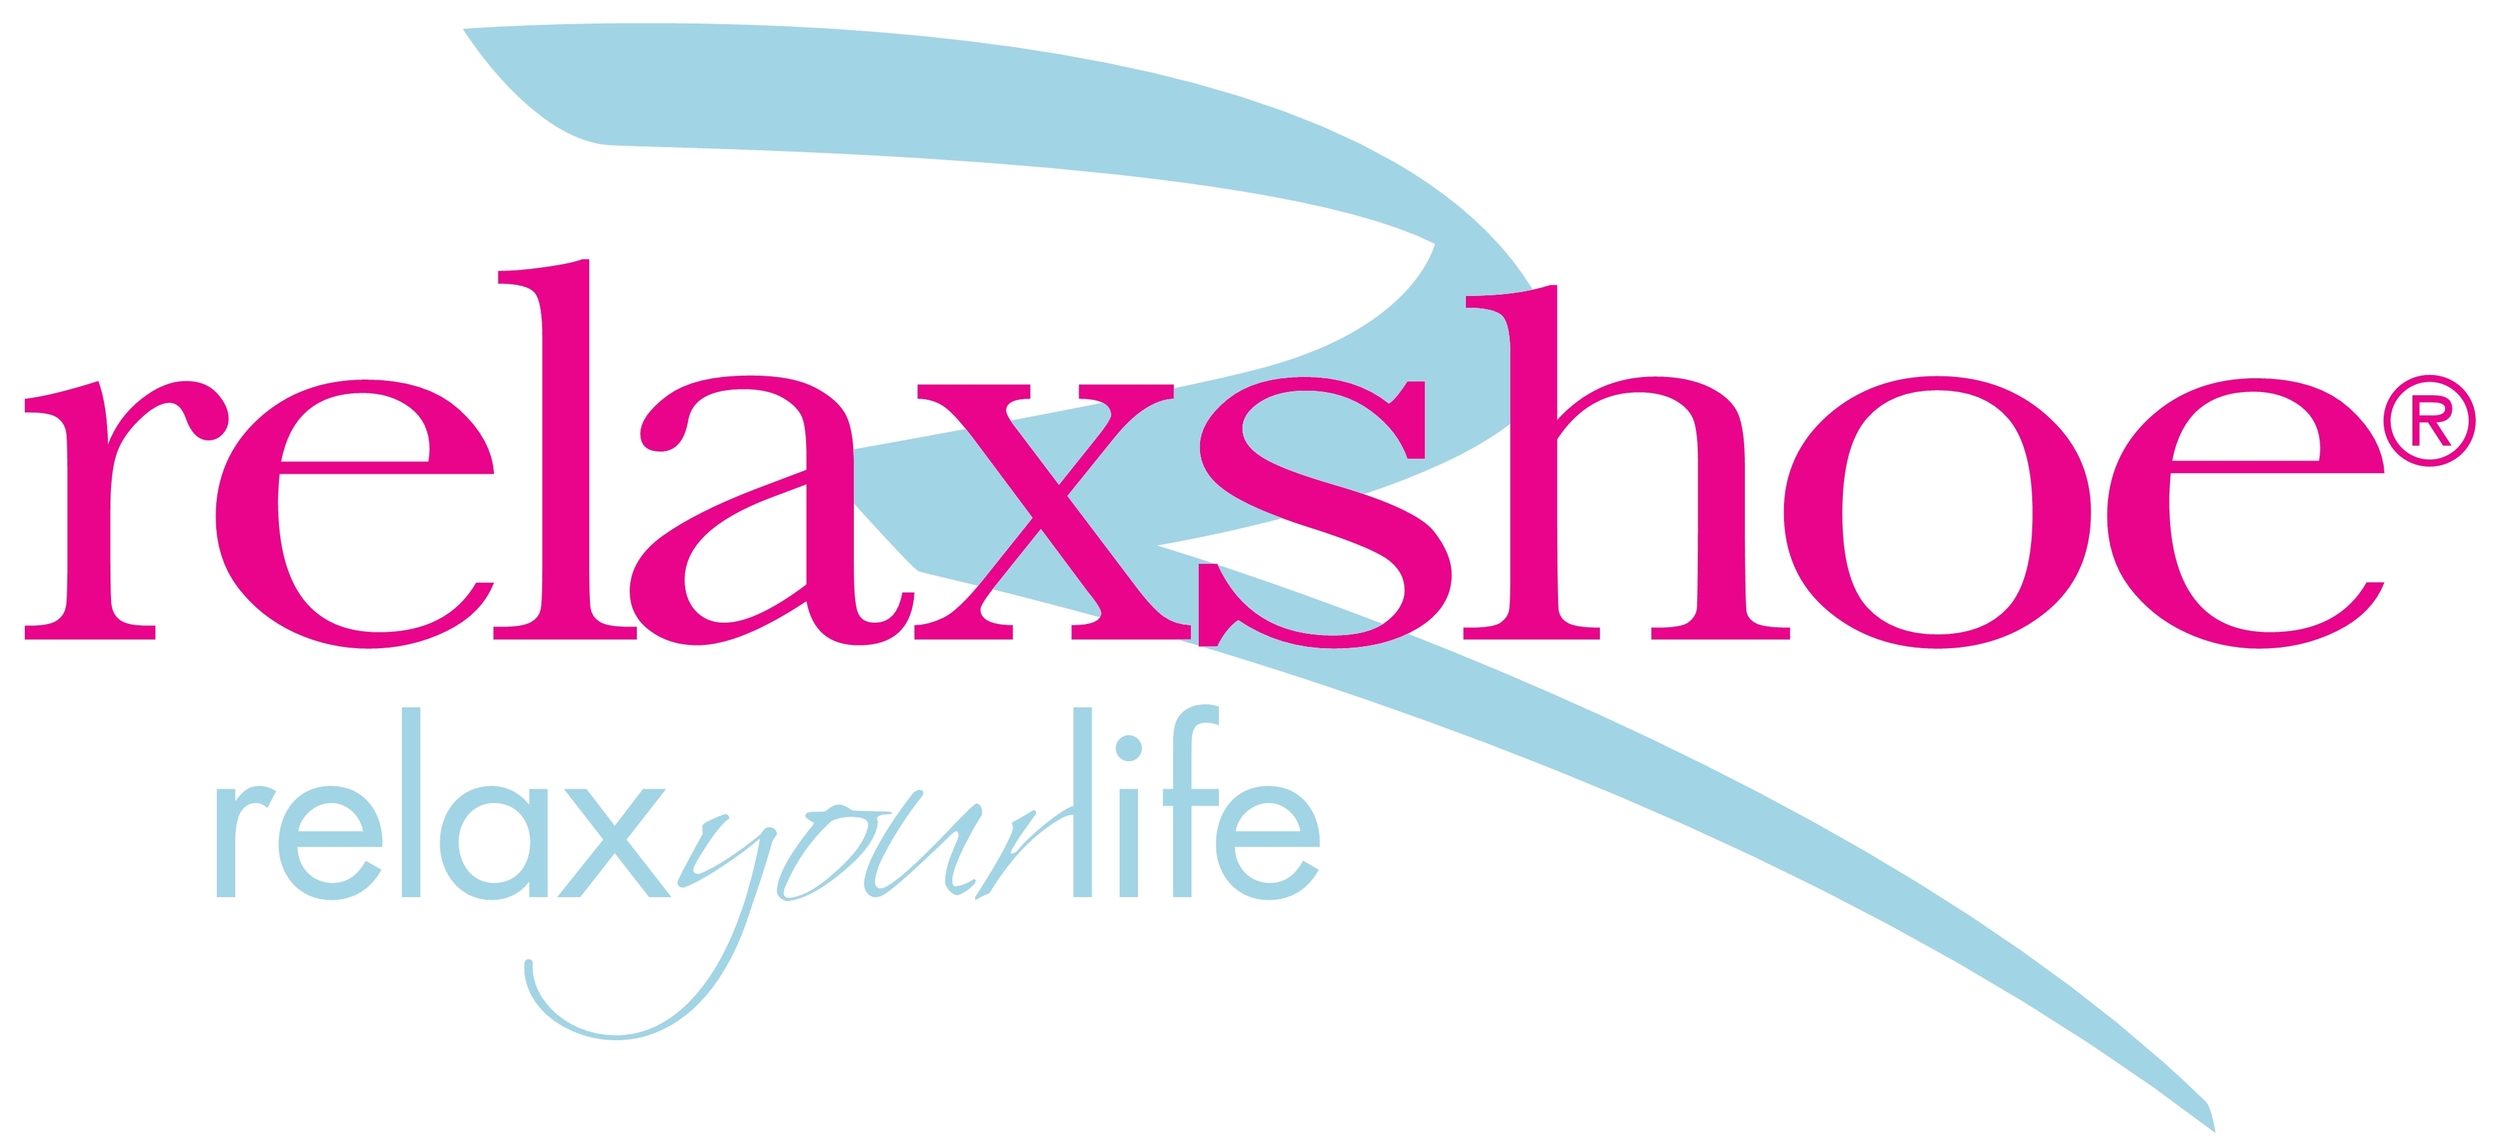 Logo Relaxshoe 588.jpg